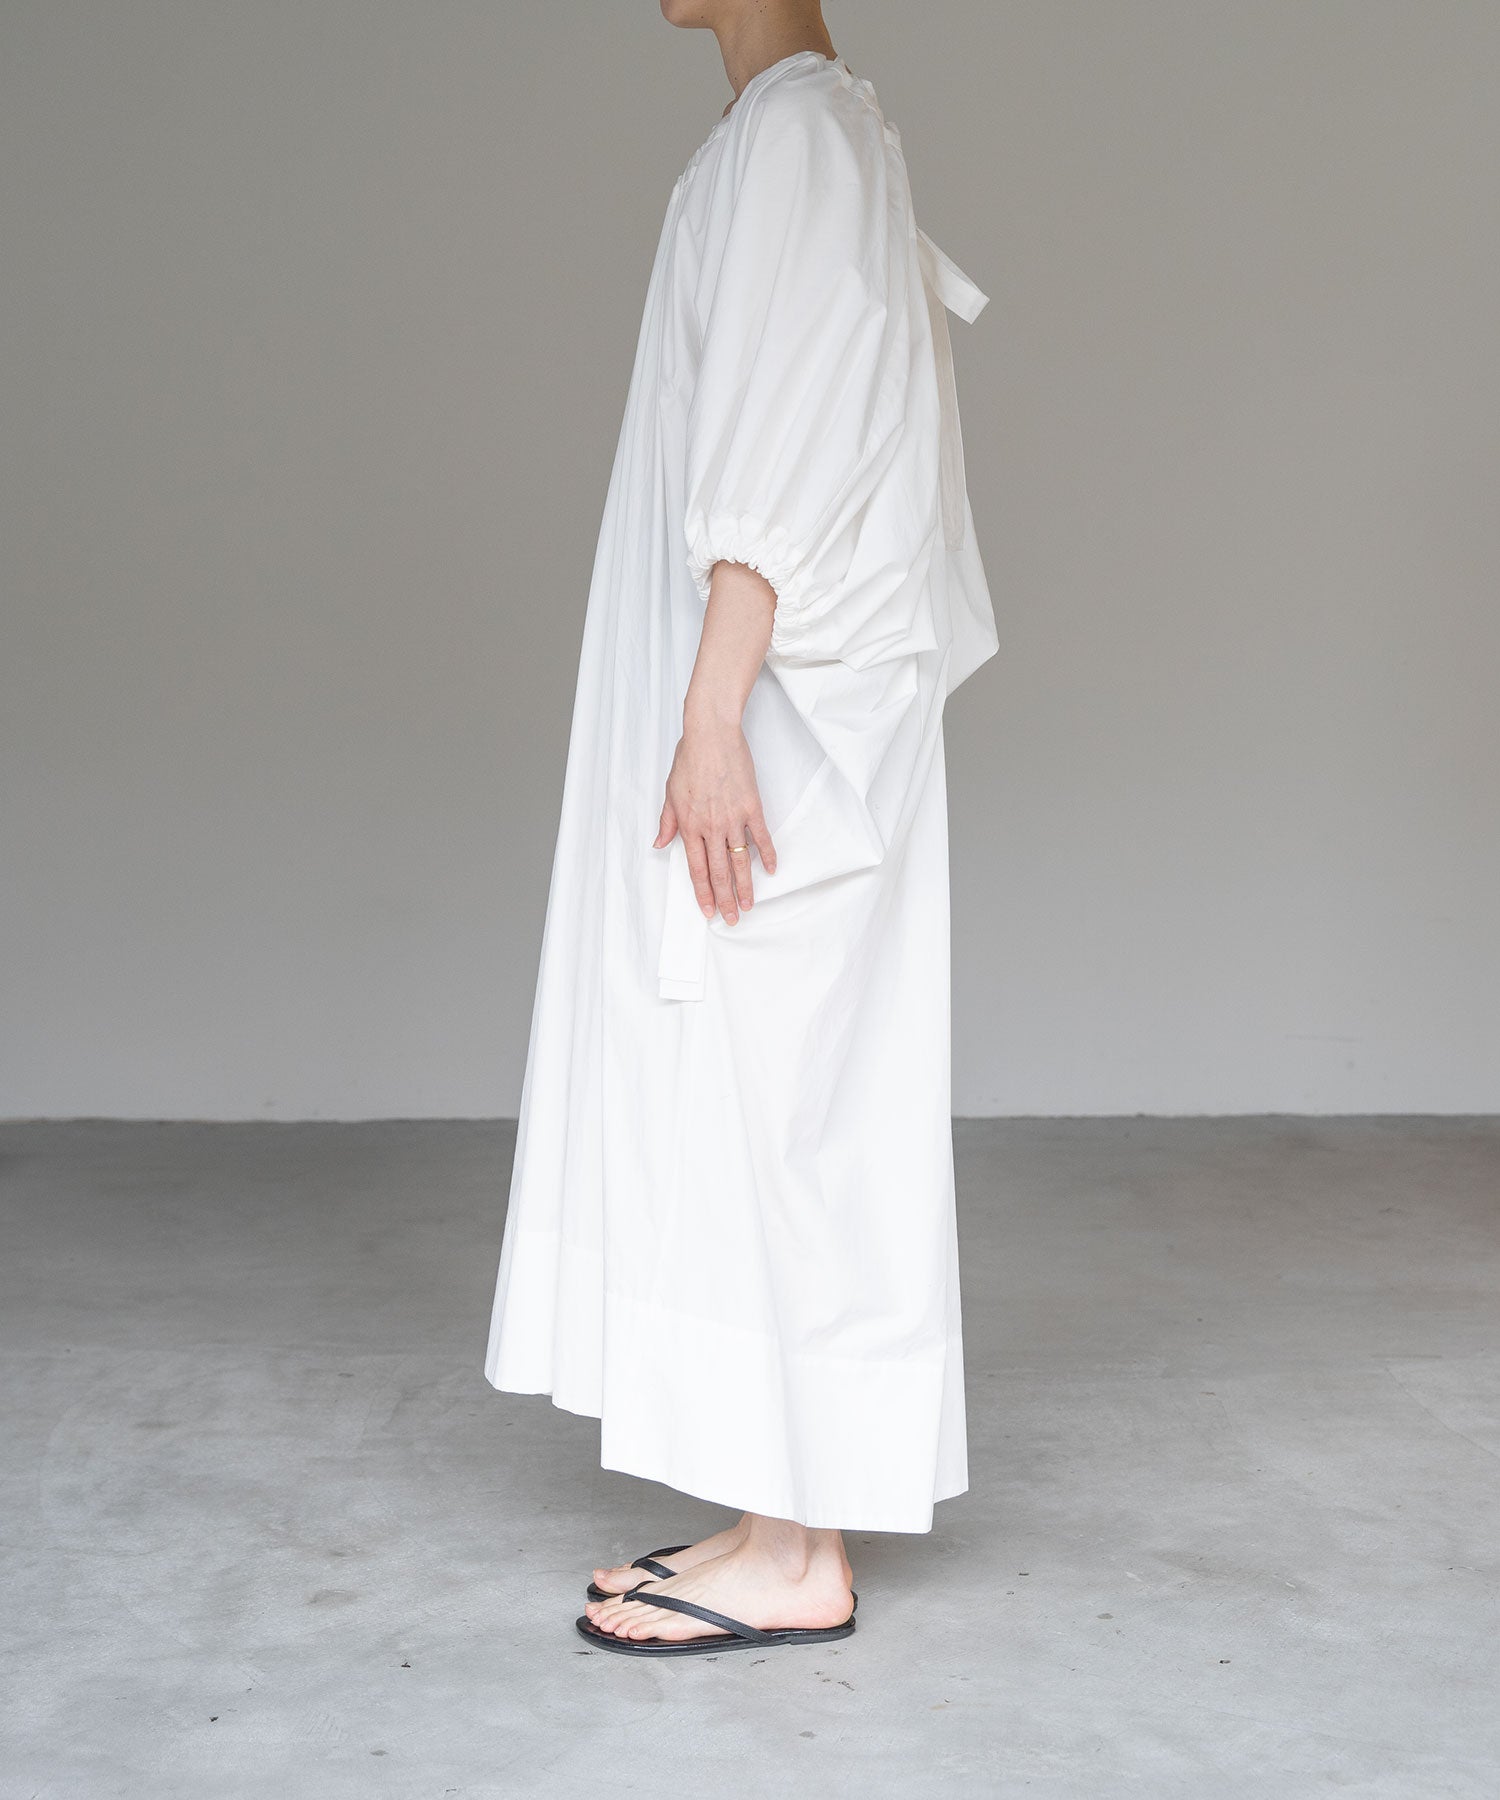 ひざ丈ワンピースmuller of yoshiokubo / ミュラーオブヨシオクボ | Bahia Lace Shirts Dress ワンピース | 36 | white | レディース